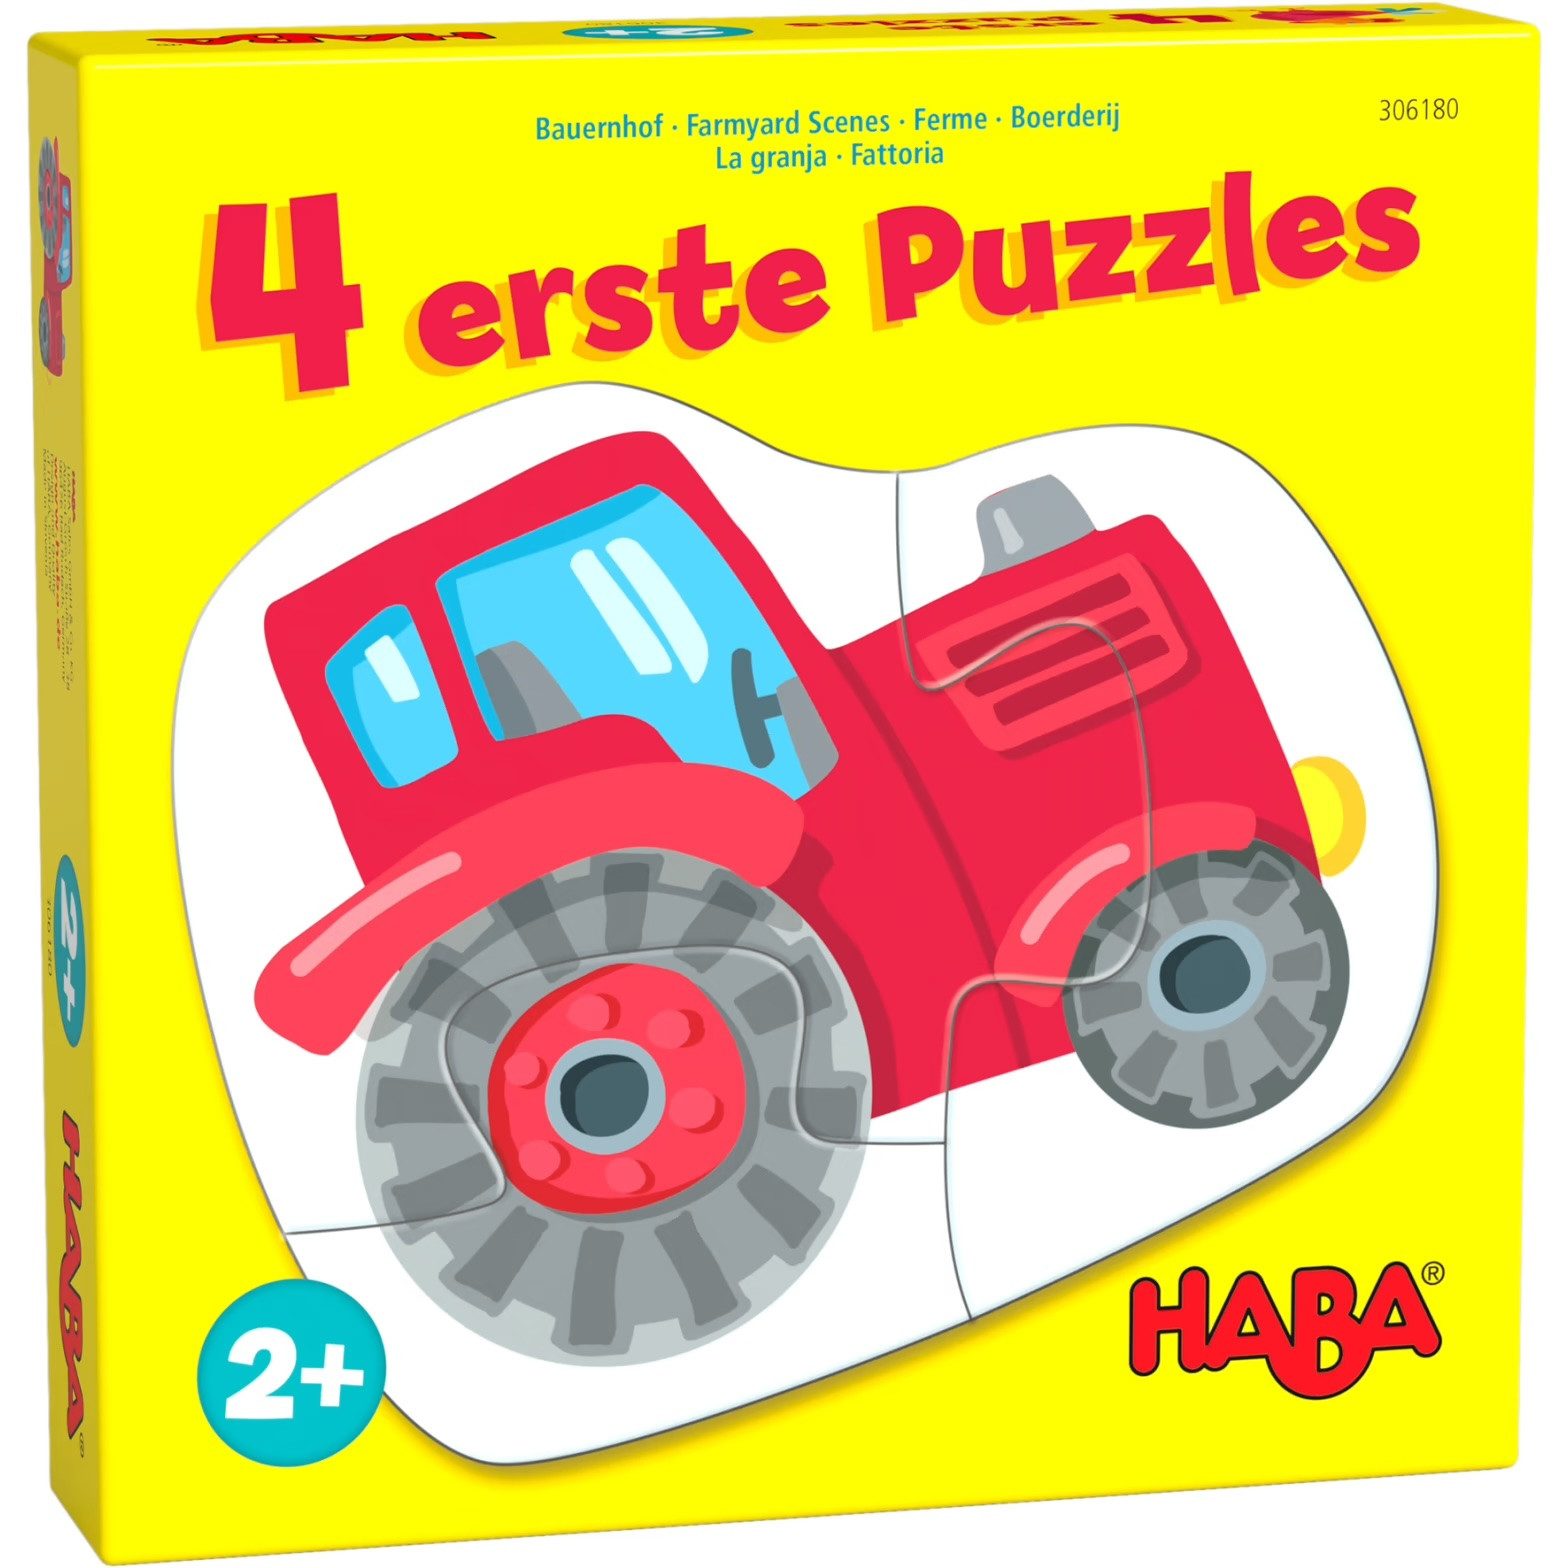 Haba Puzzle 4 erste Puzzles – Bauernhof, 12 Puzzleteile, 4 Puzzle mit 1 x 2, 2 x 3 und 1 x 4 Teilen